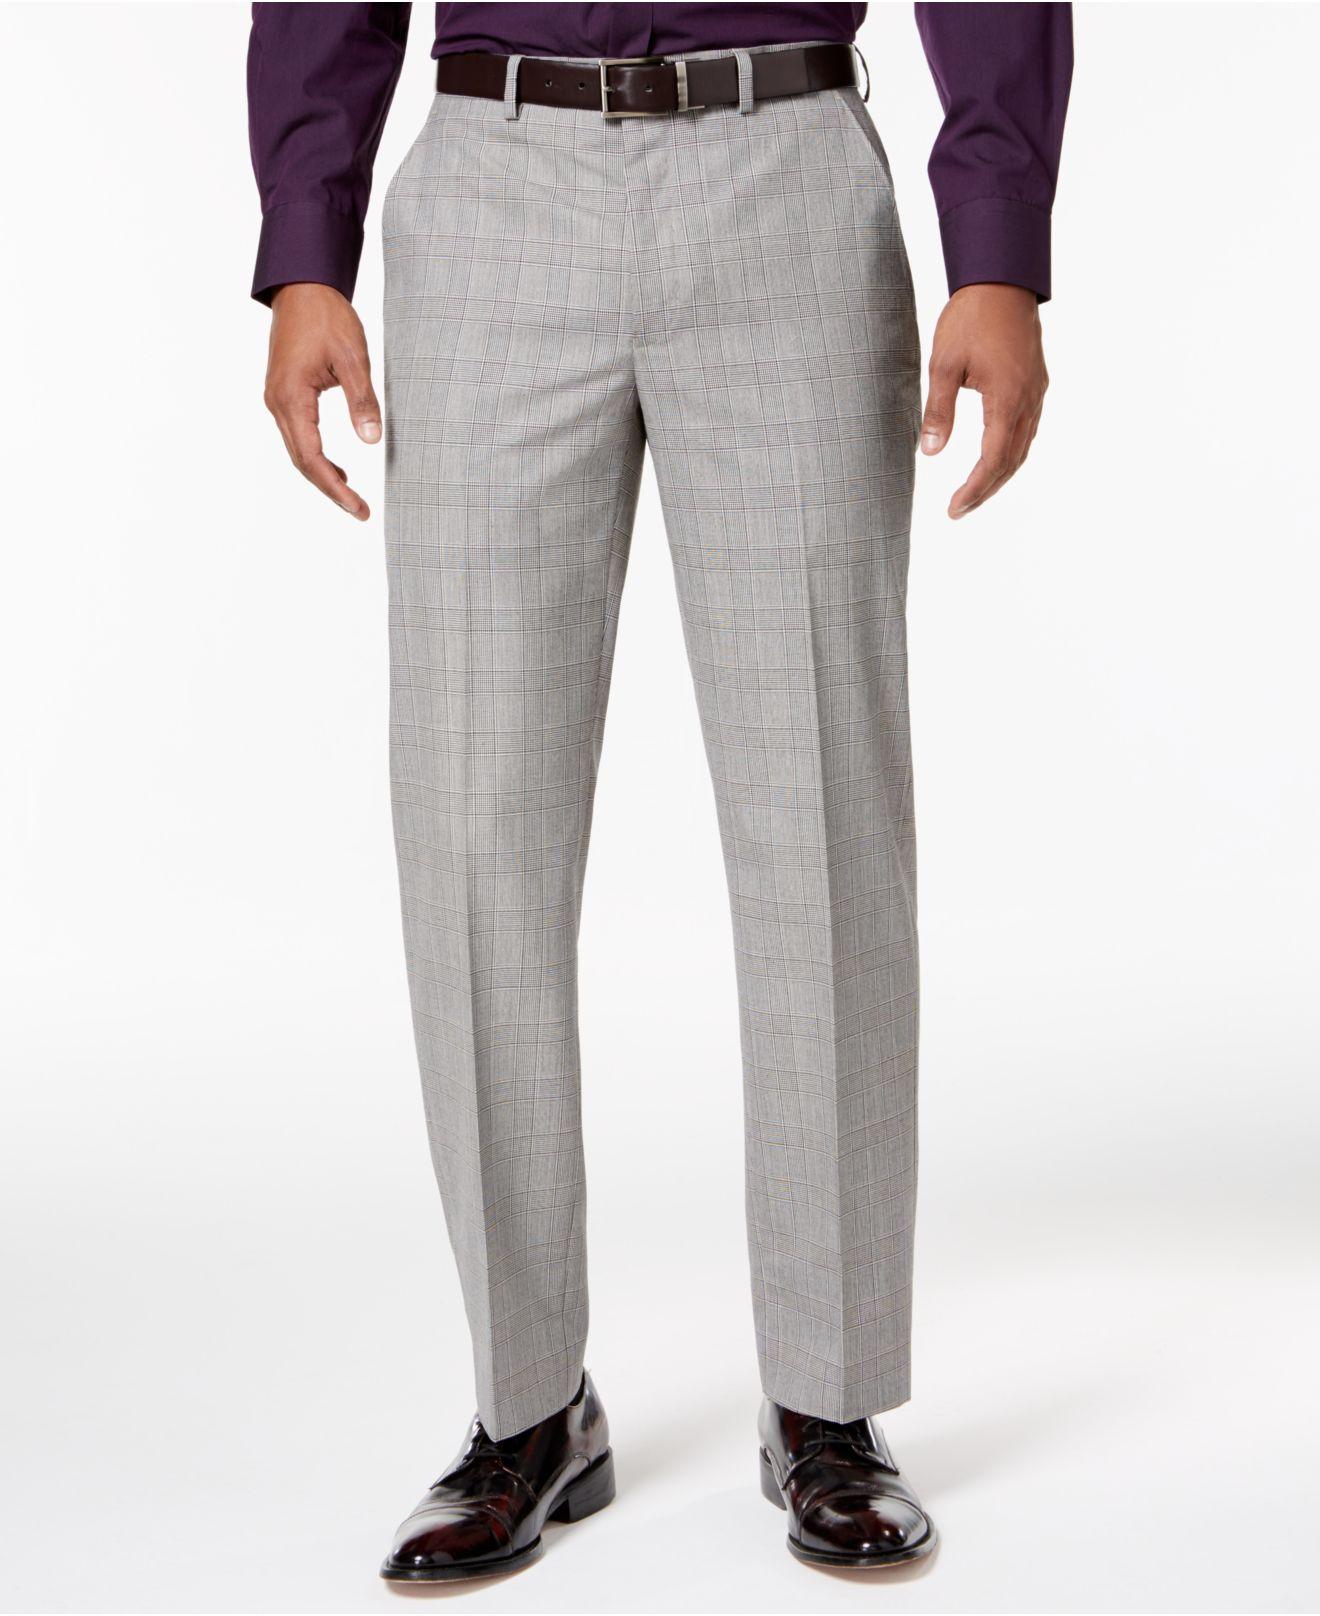 Lyst - Sean john Men's Classic-fit Black/white Plaid Suit Pants in ...